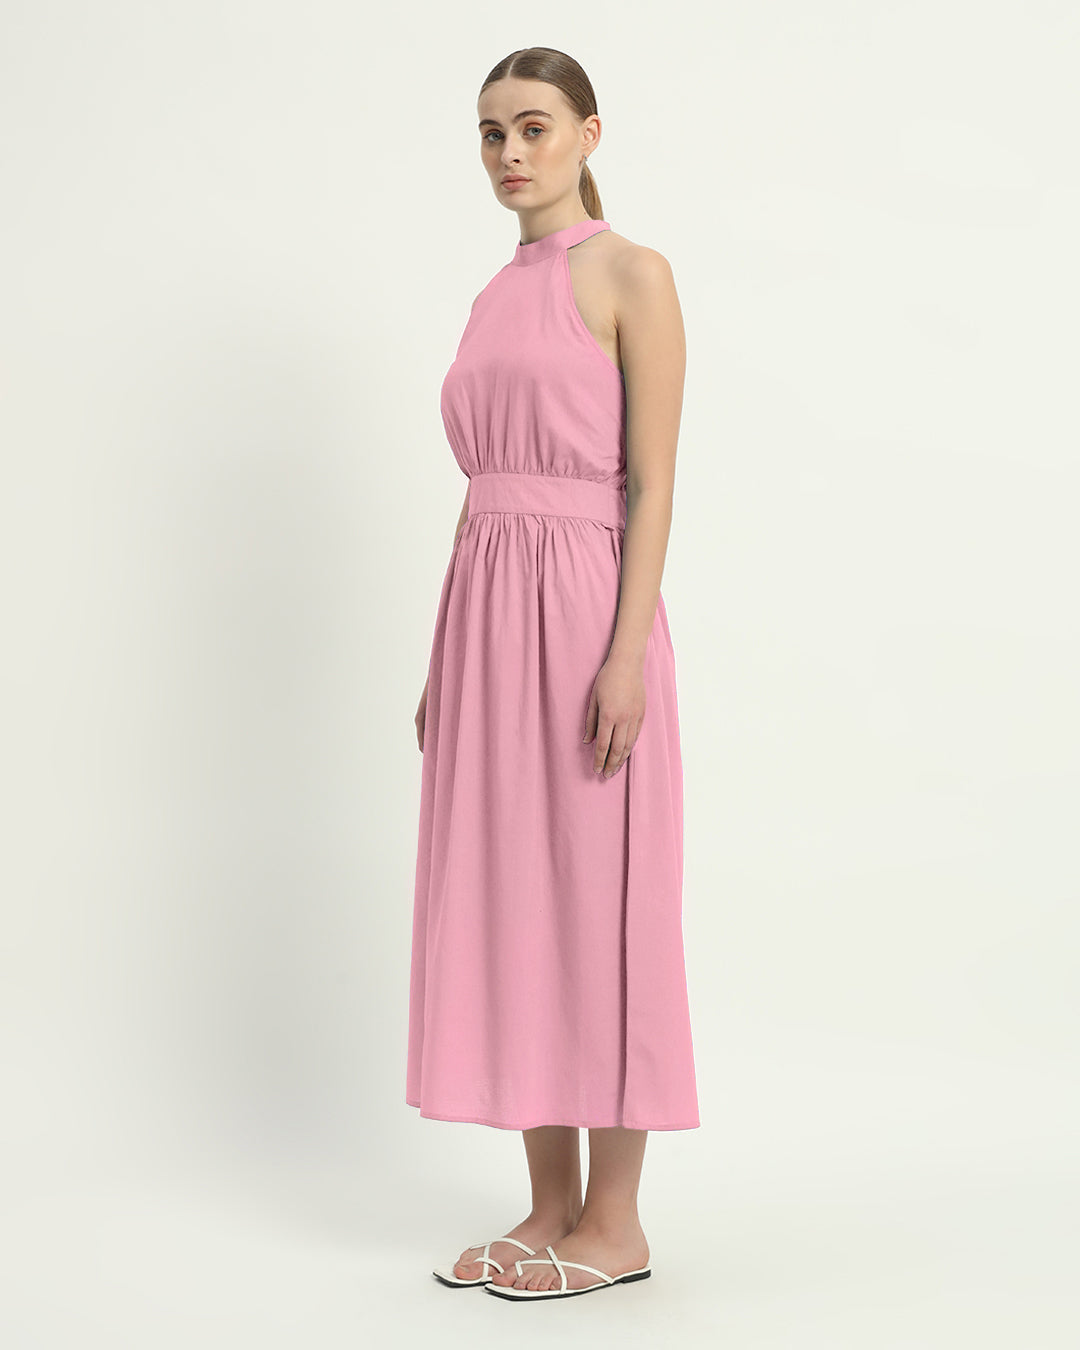 The Fondant Pink Massena Cotton Dress